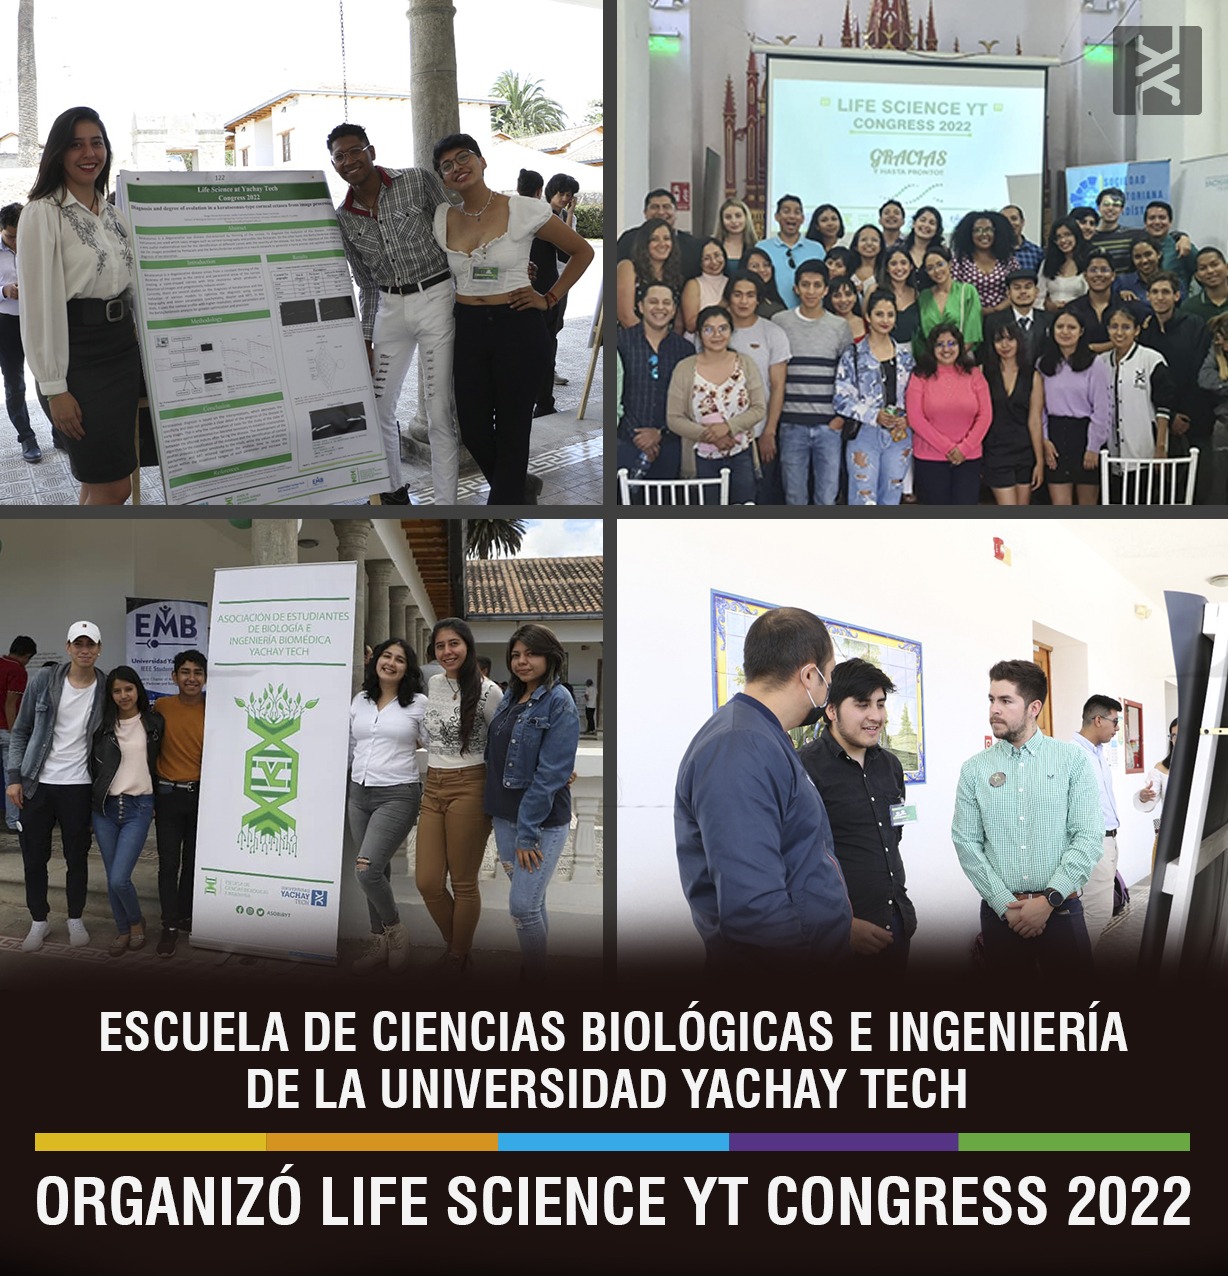 ESCUELA DE CIENCIAS BIOLÓGICAS E INGENIERIA ORGANIZÓ EL LIFE SCIENCE YT CONGRESS 2022